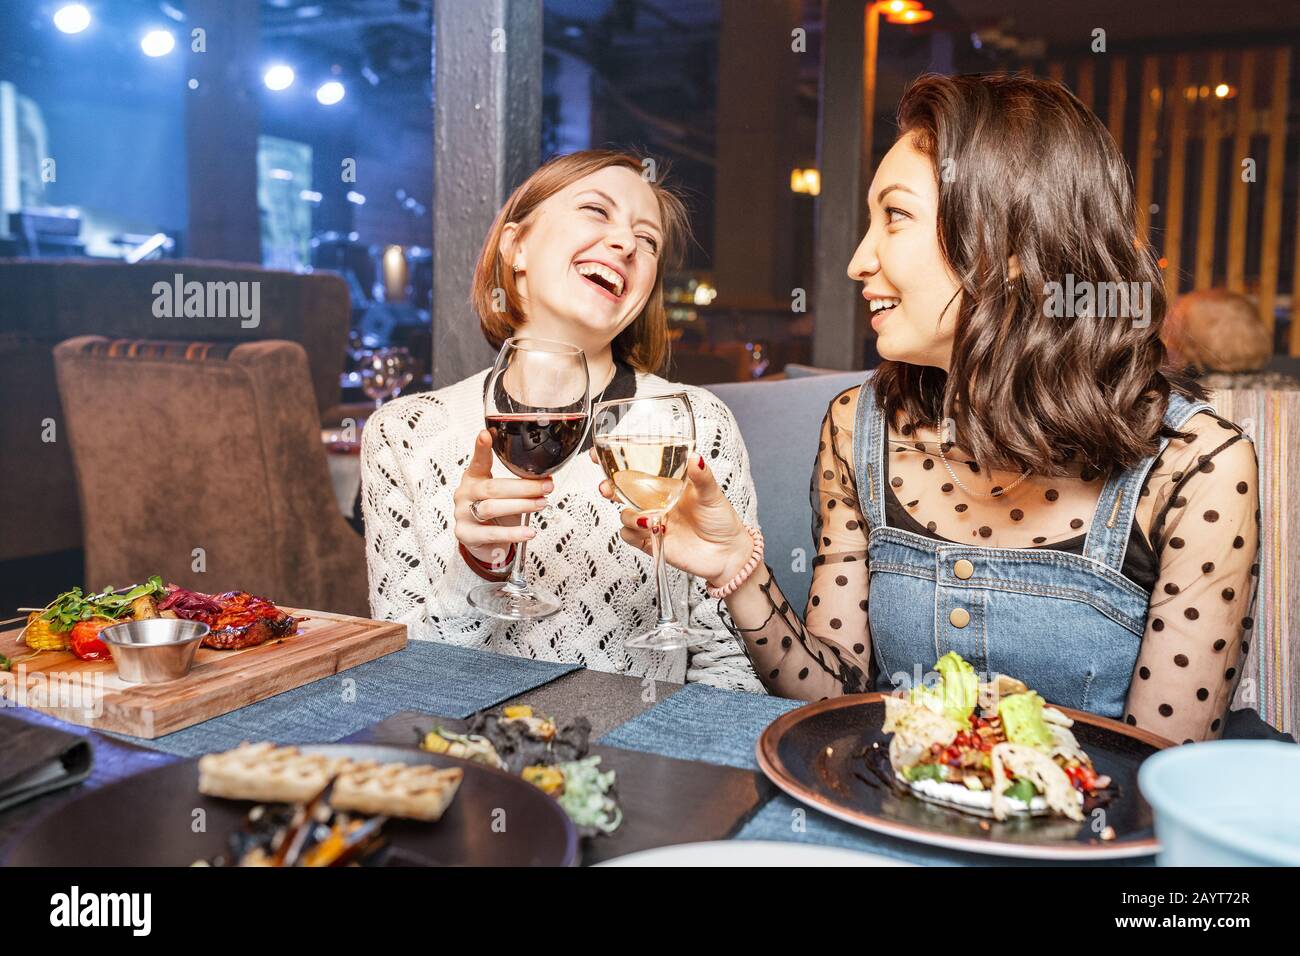 Deux filles amis discutant et boire du vin dans un restaurant dans une discothèque. Concept d'amitié et de nourriture et de boissons Banque D'Images